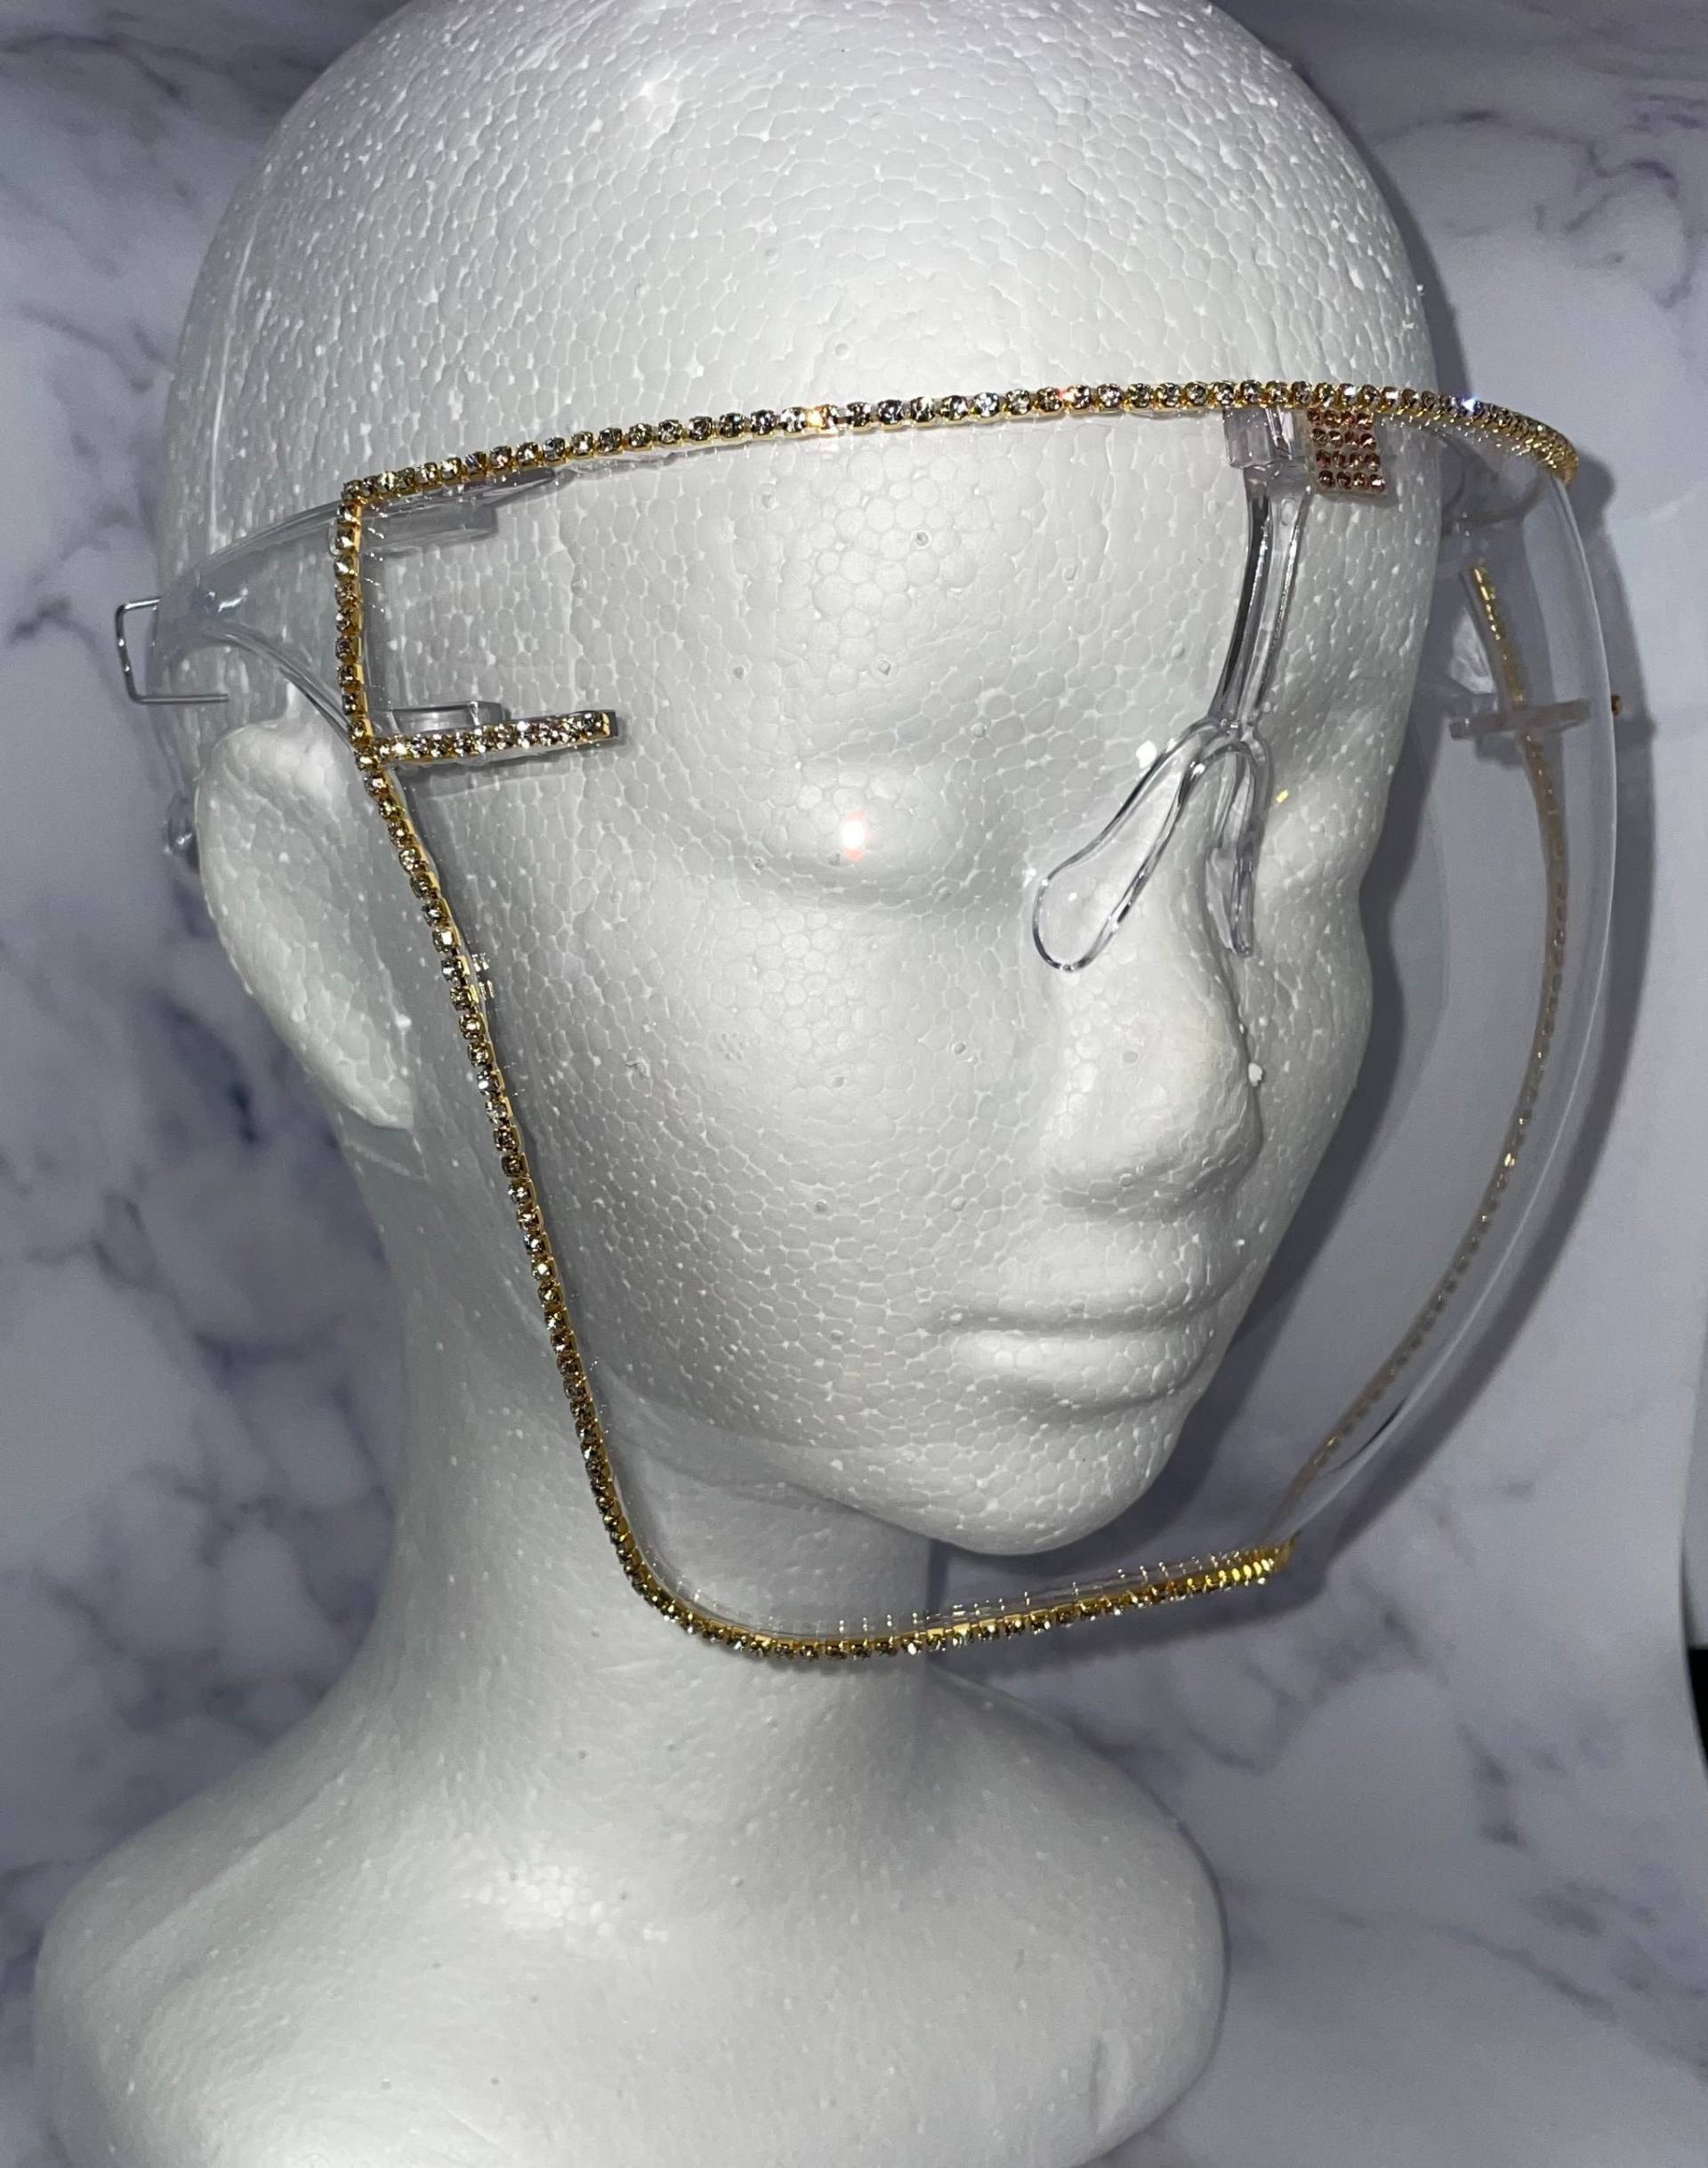 Gesichtsschutz | Gold Bling Schild Hübscher Glam Shield Astro-Schild Klarer Antibeschlag von Etsy - DesignsByJMoB